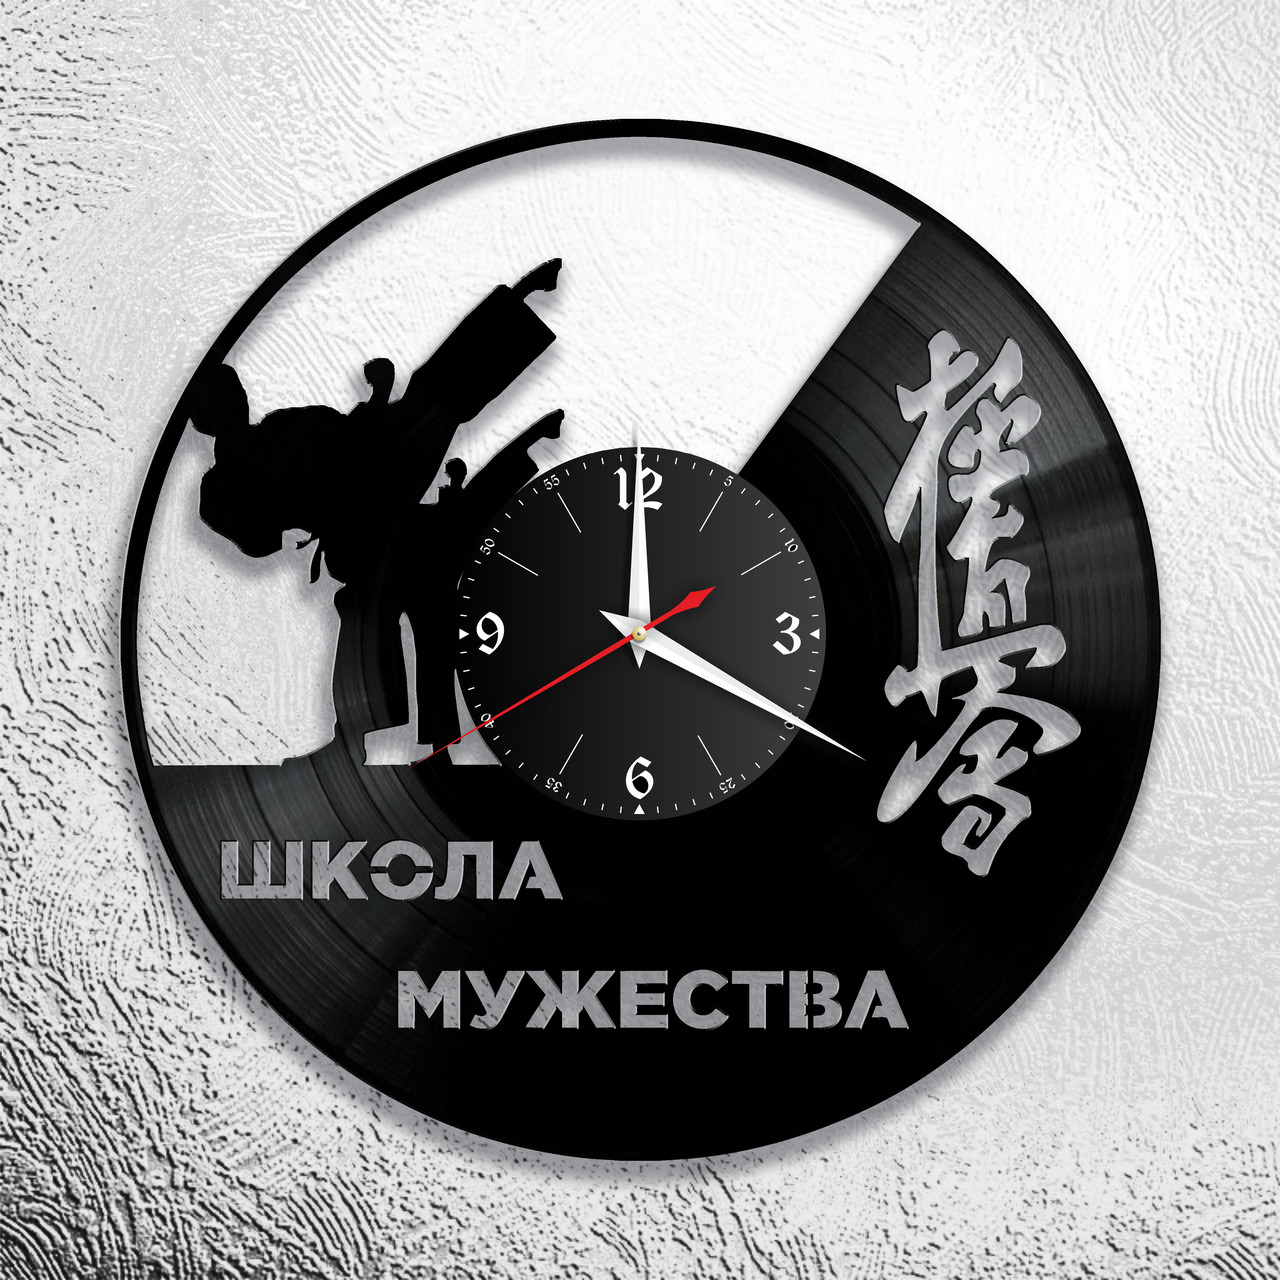 Оригинальные часы из виниловых пластинок  "Каратэ" версия 3, фото 1